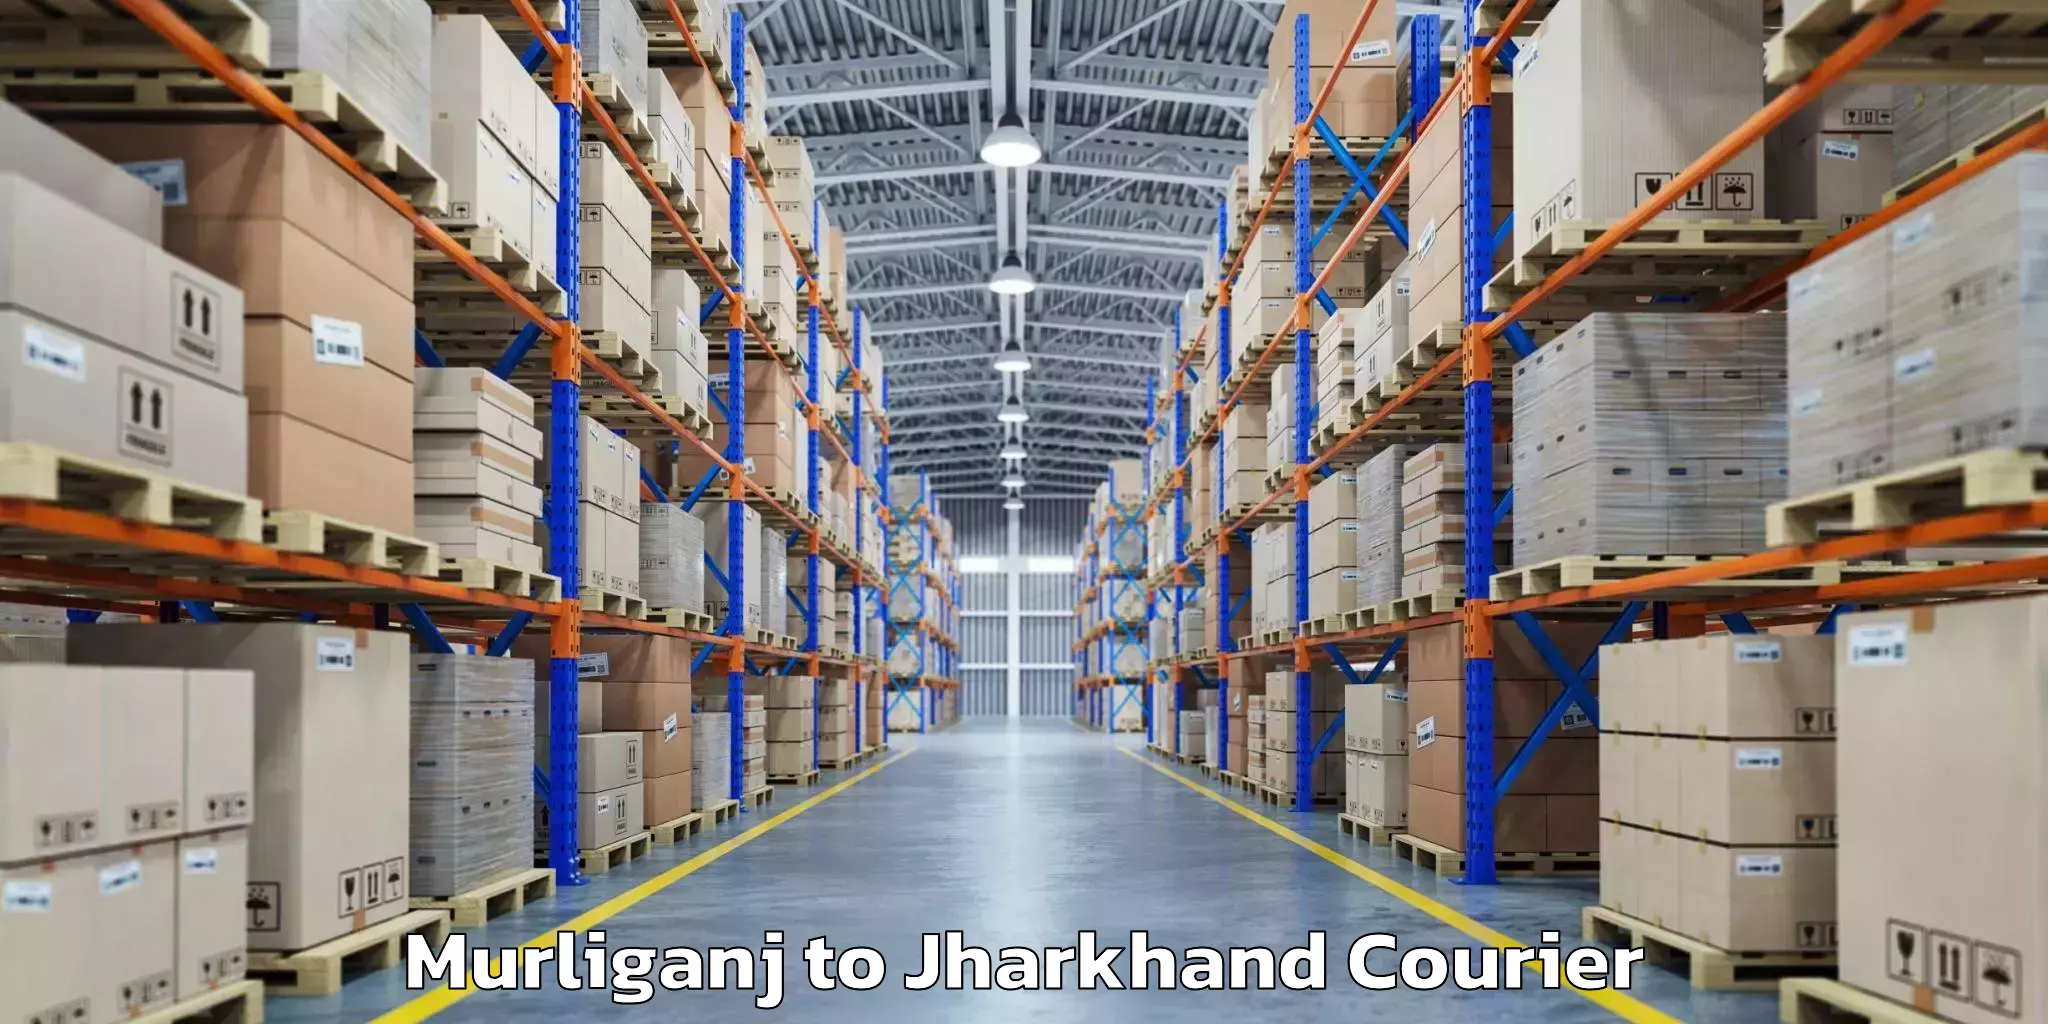 Baggage transport management Murliganj to Jharkhand